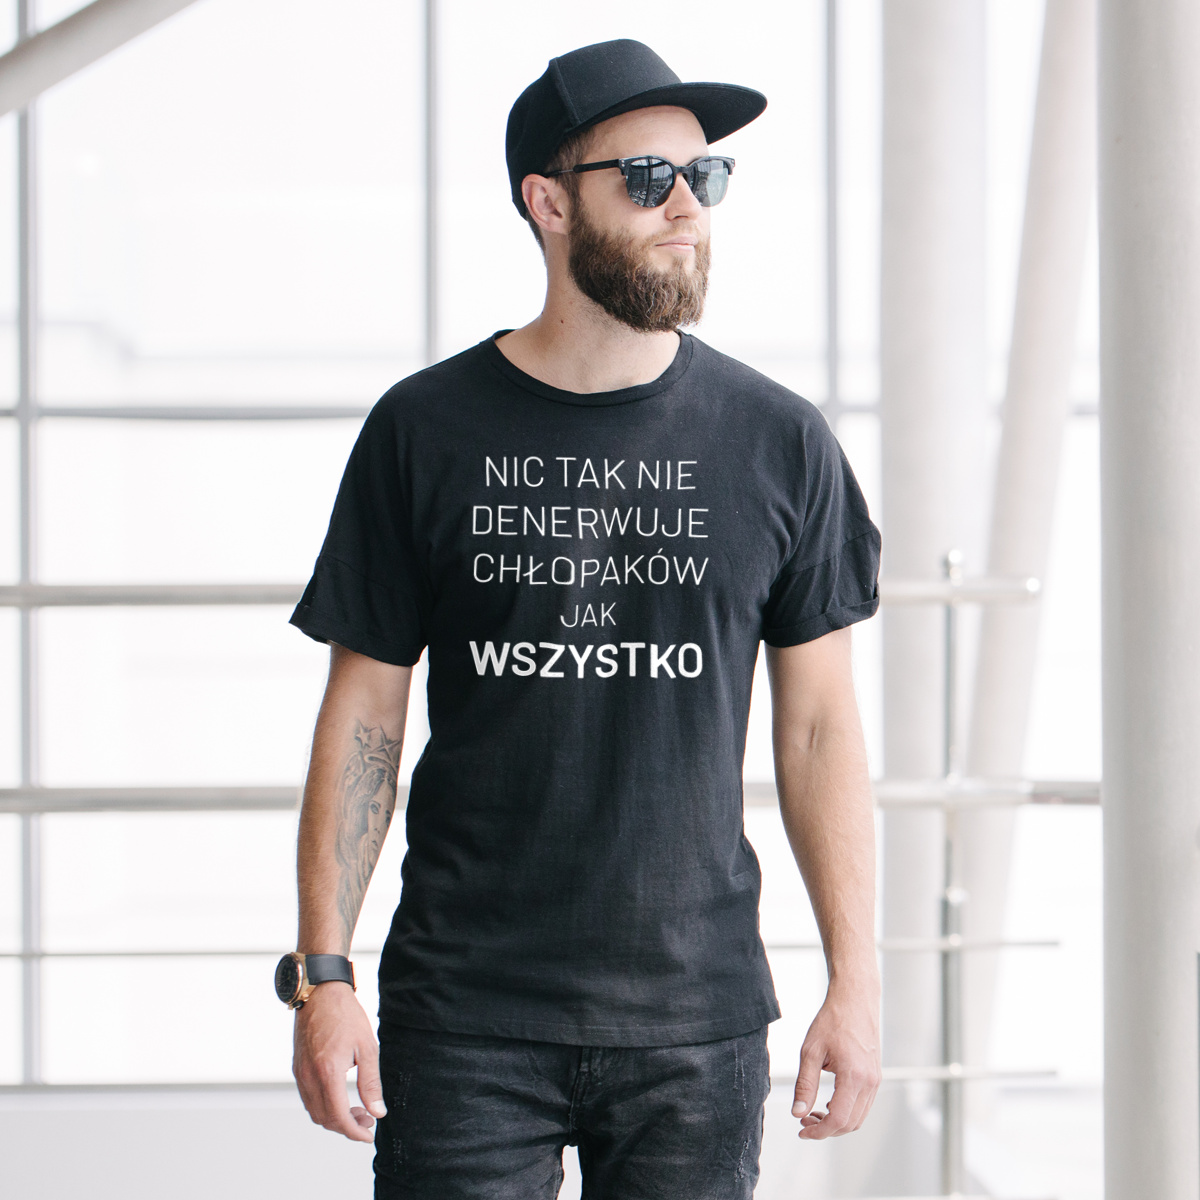 Nic Tak Nie Denerwuje Chłopaków Jak Wszystko - Męska Koszulka Czarna